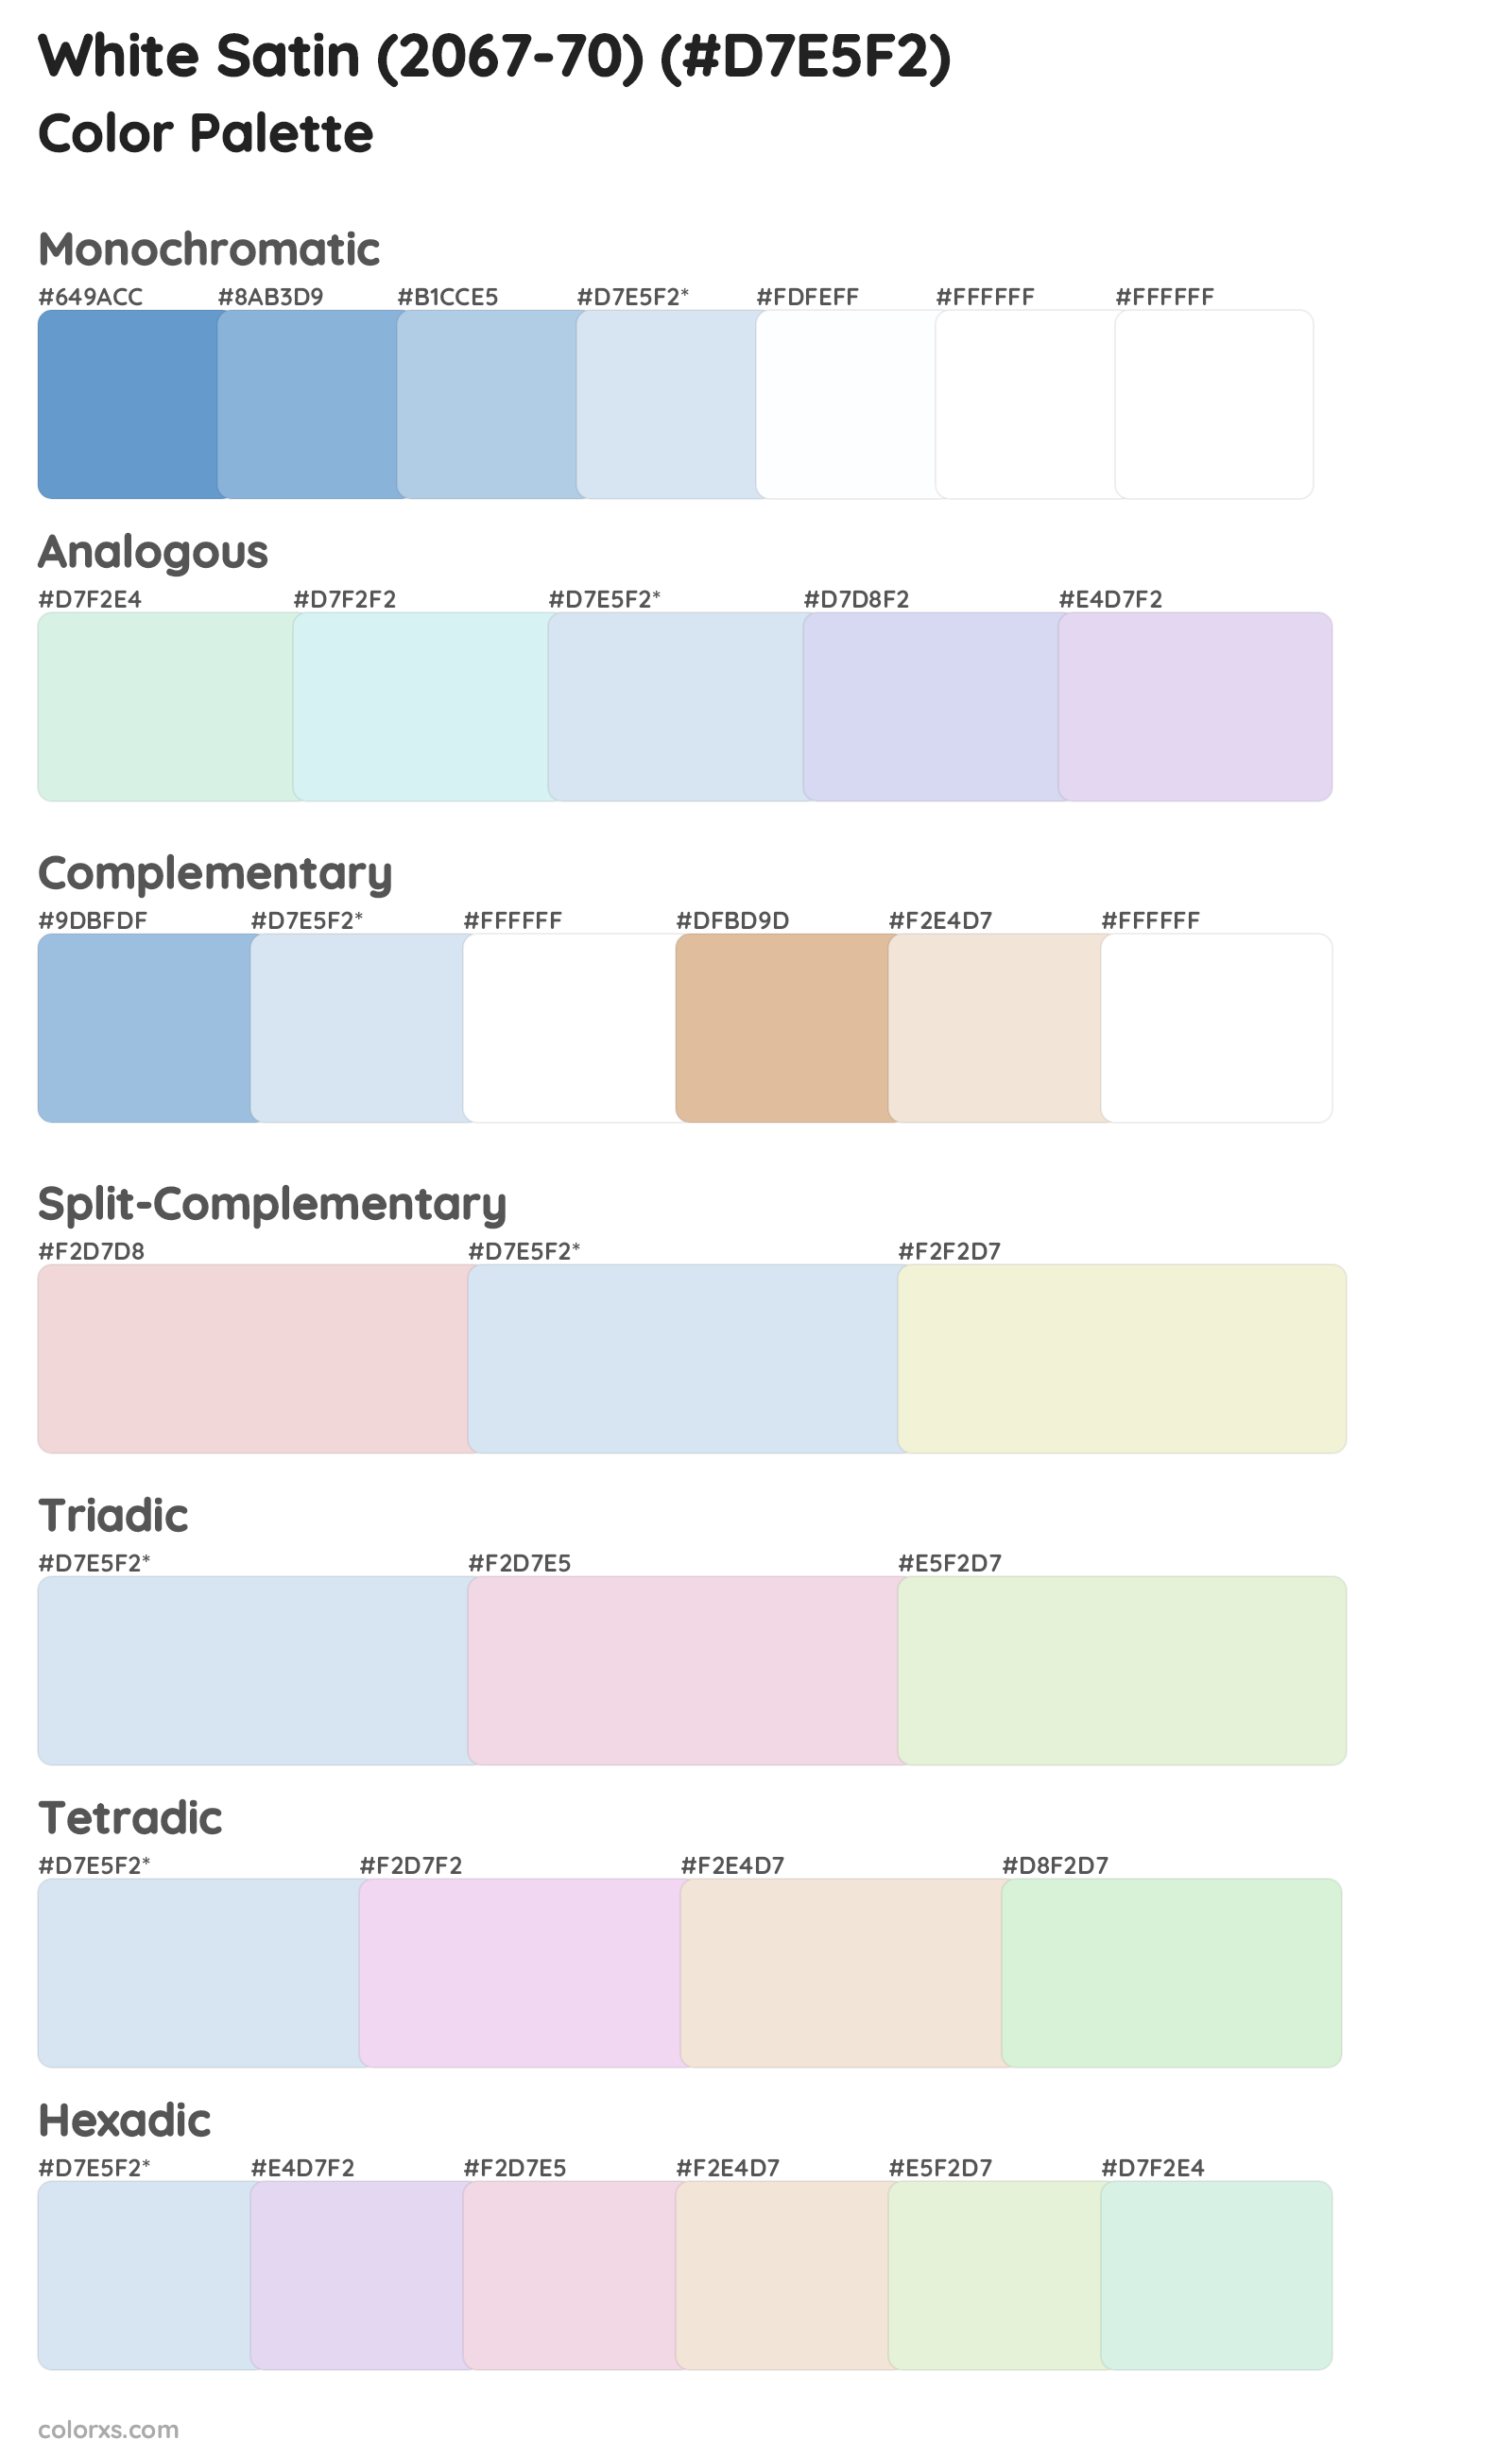 White Satin (2067-70) Color Scheme Palettes